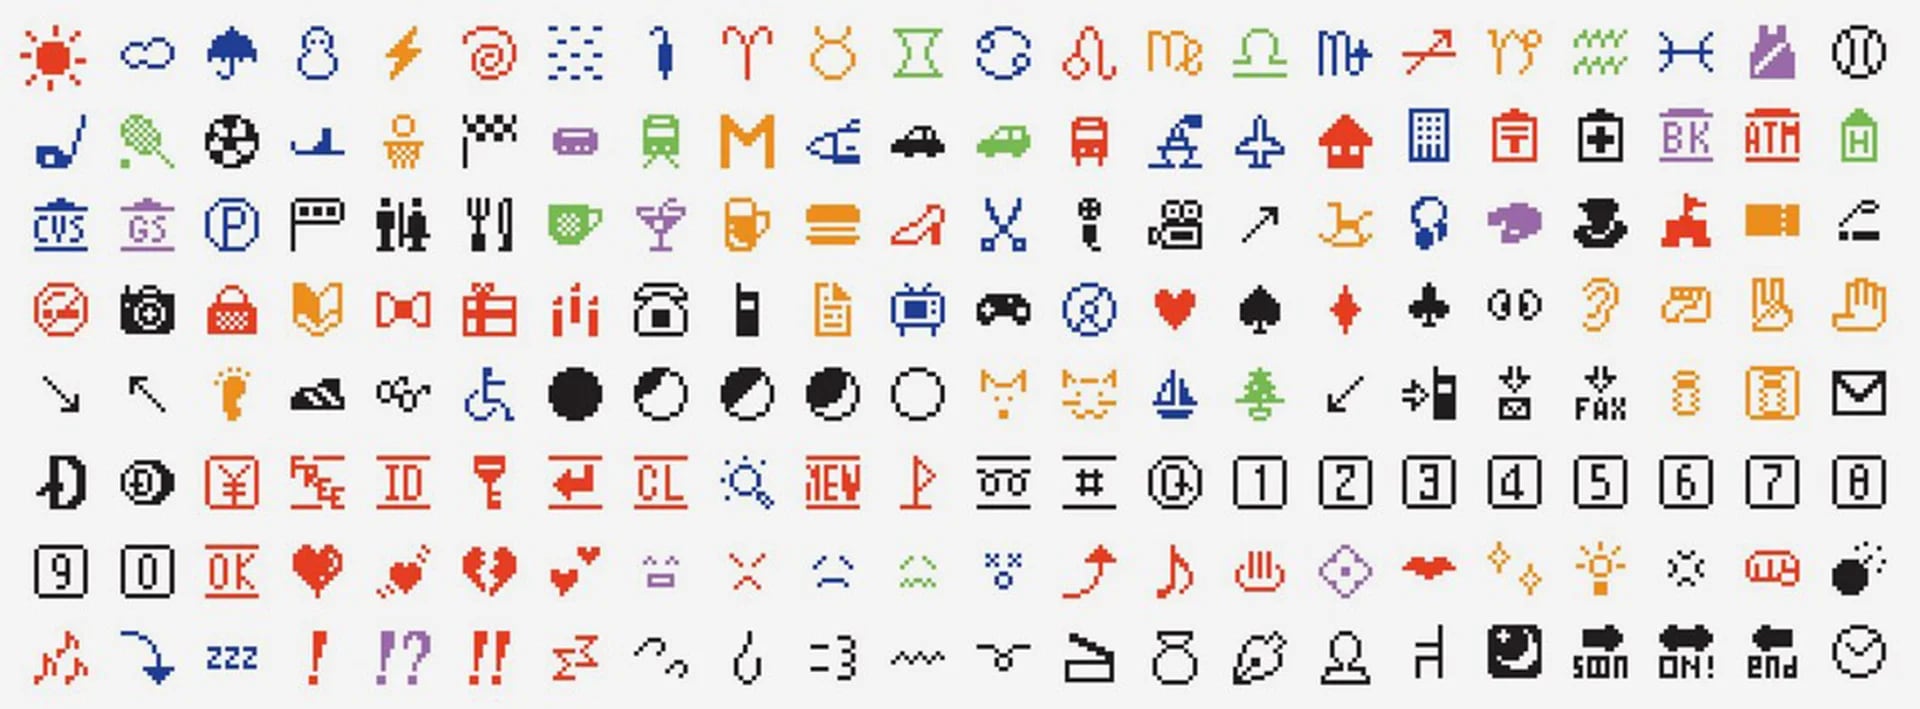 Estos son los primeros 176 emojis creados por Kurita